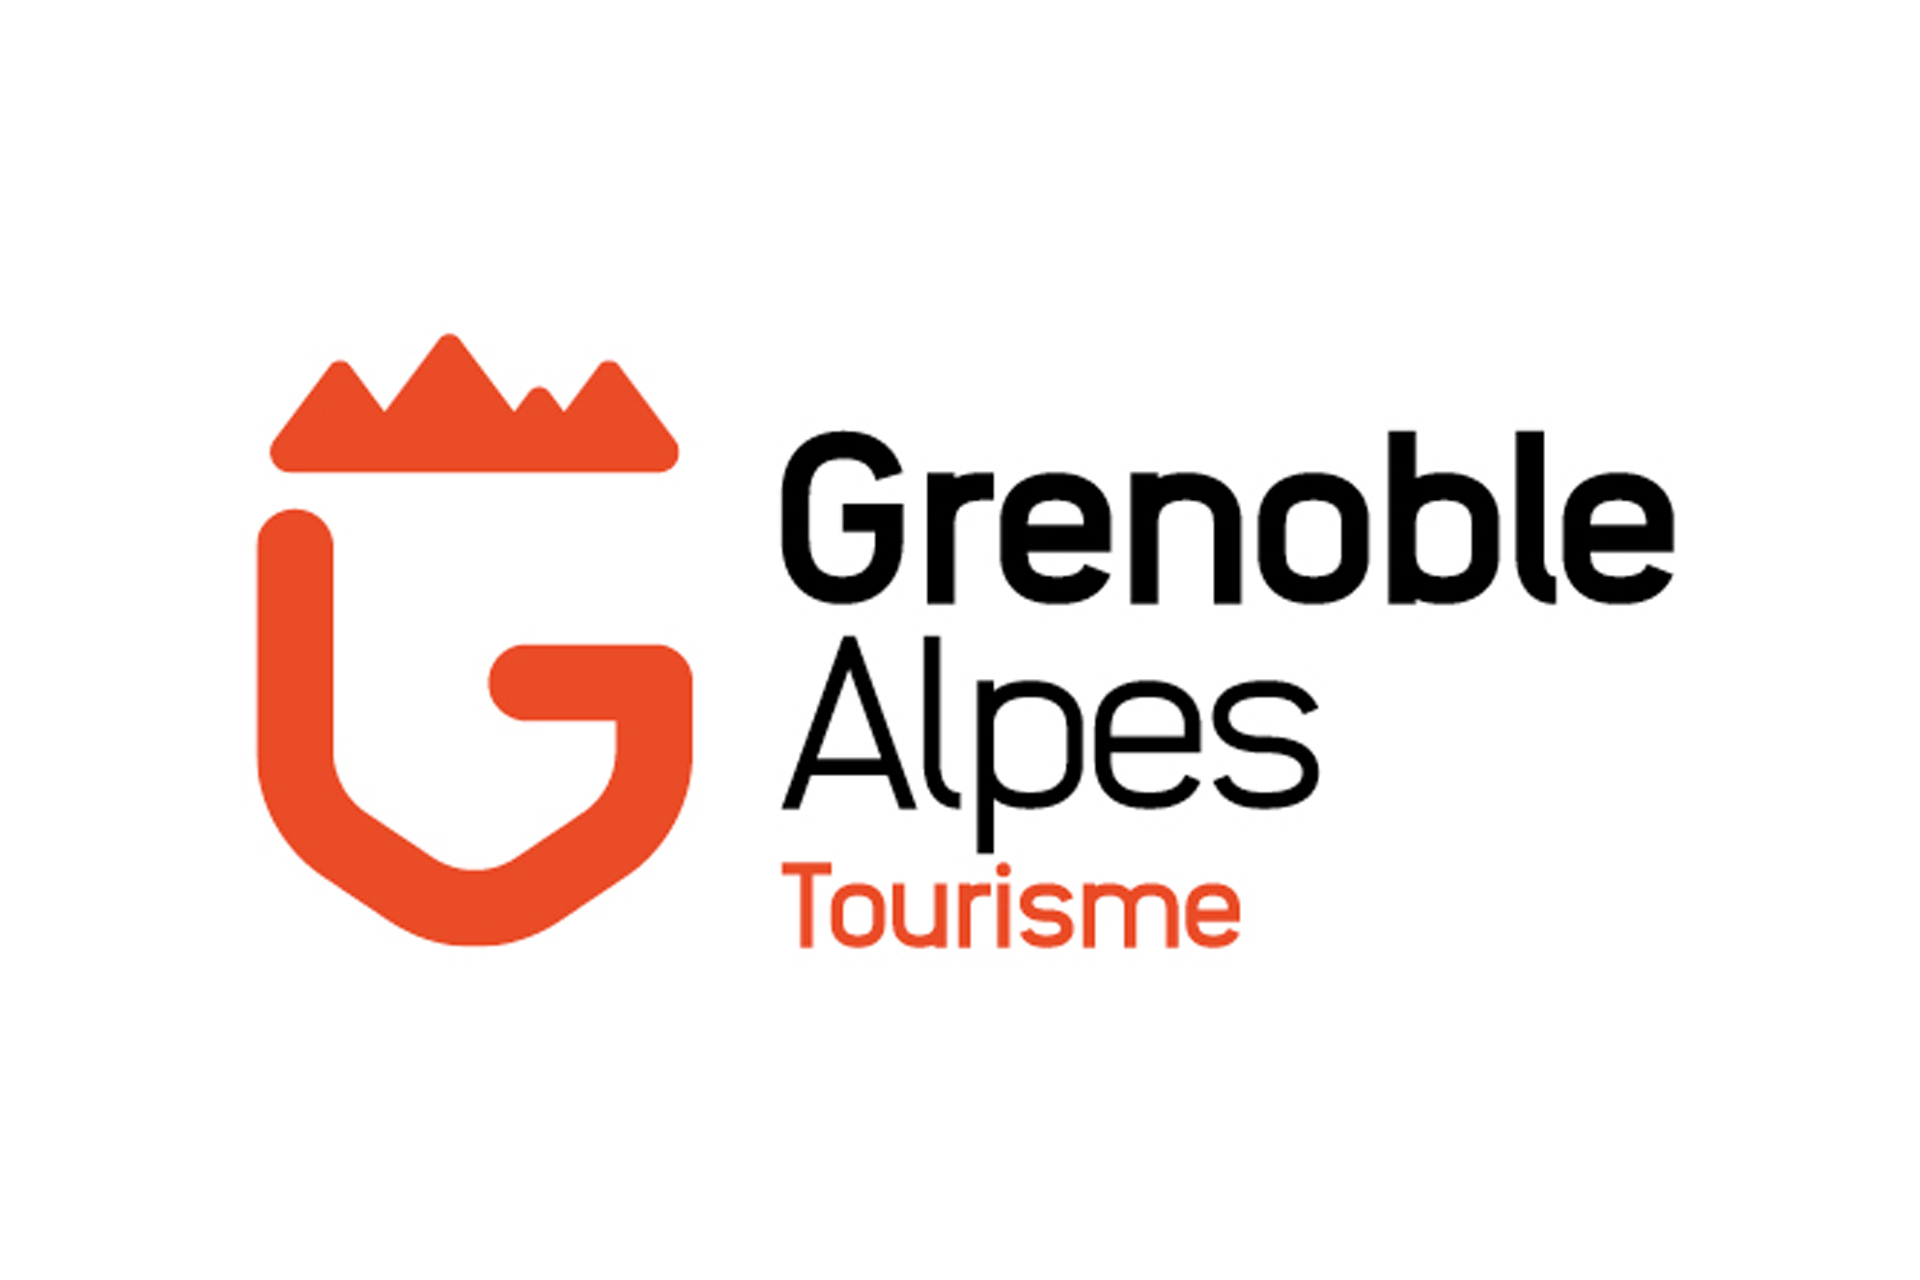 Chamrousse logo partner institution grenoble alpes tourisme ski resort mountain isere french alps france - © Grenoble Alpes Tourisme